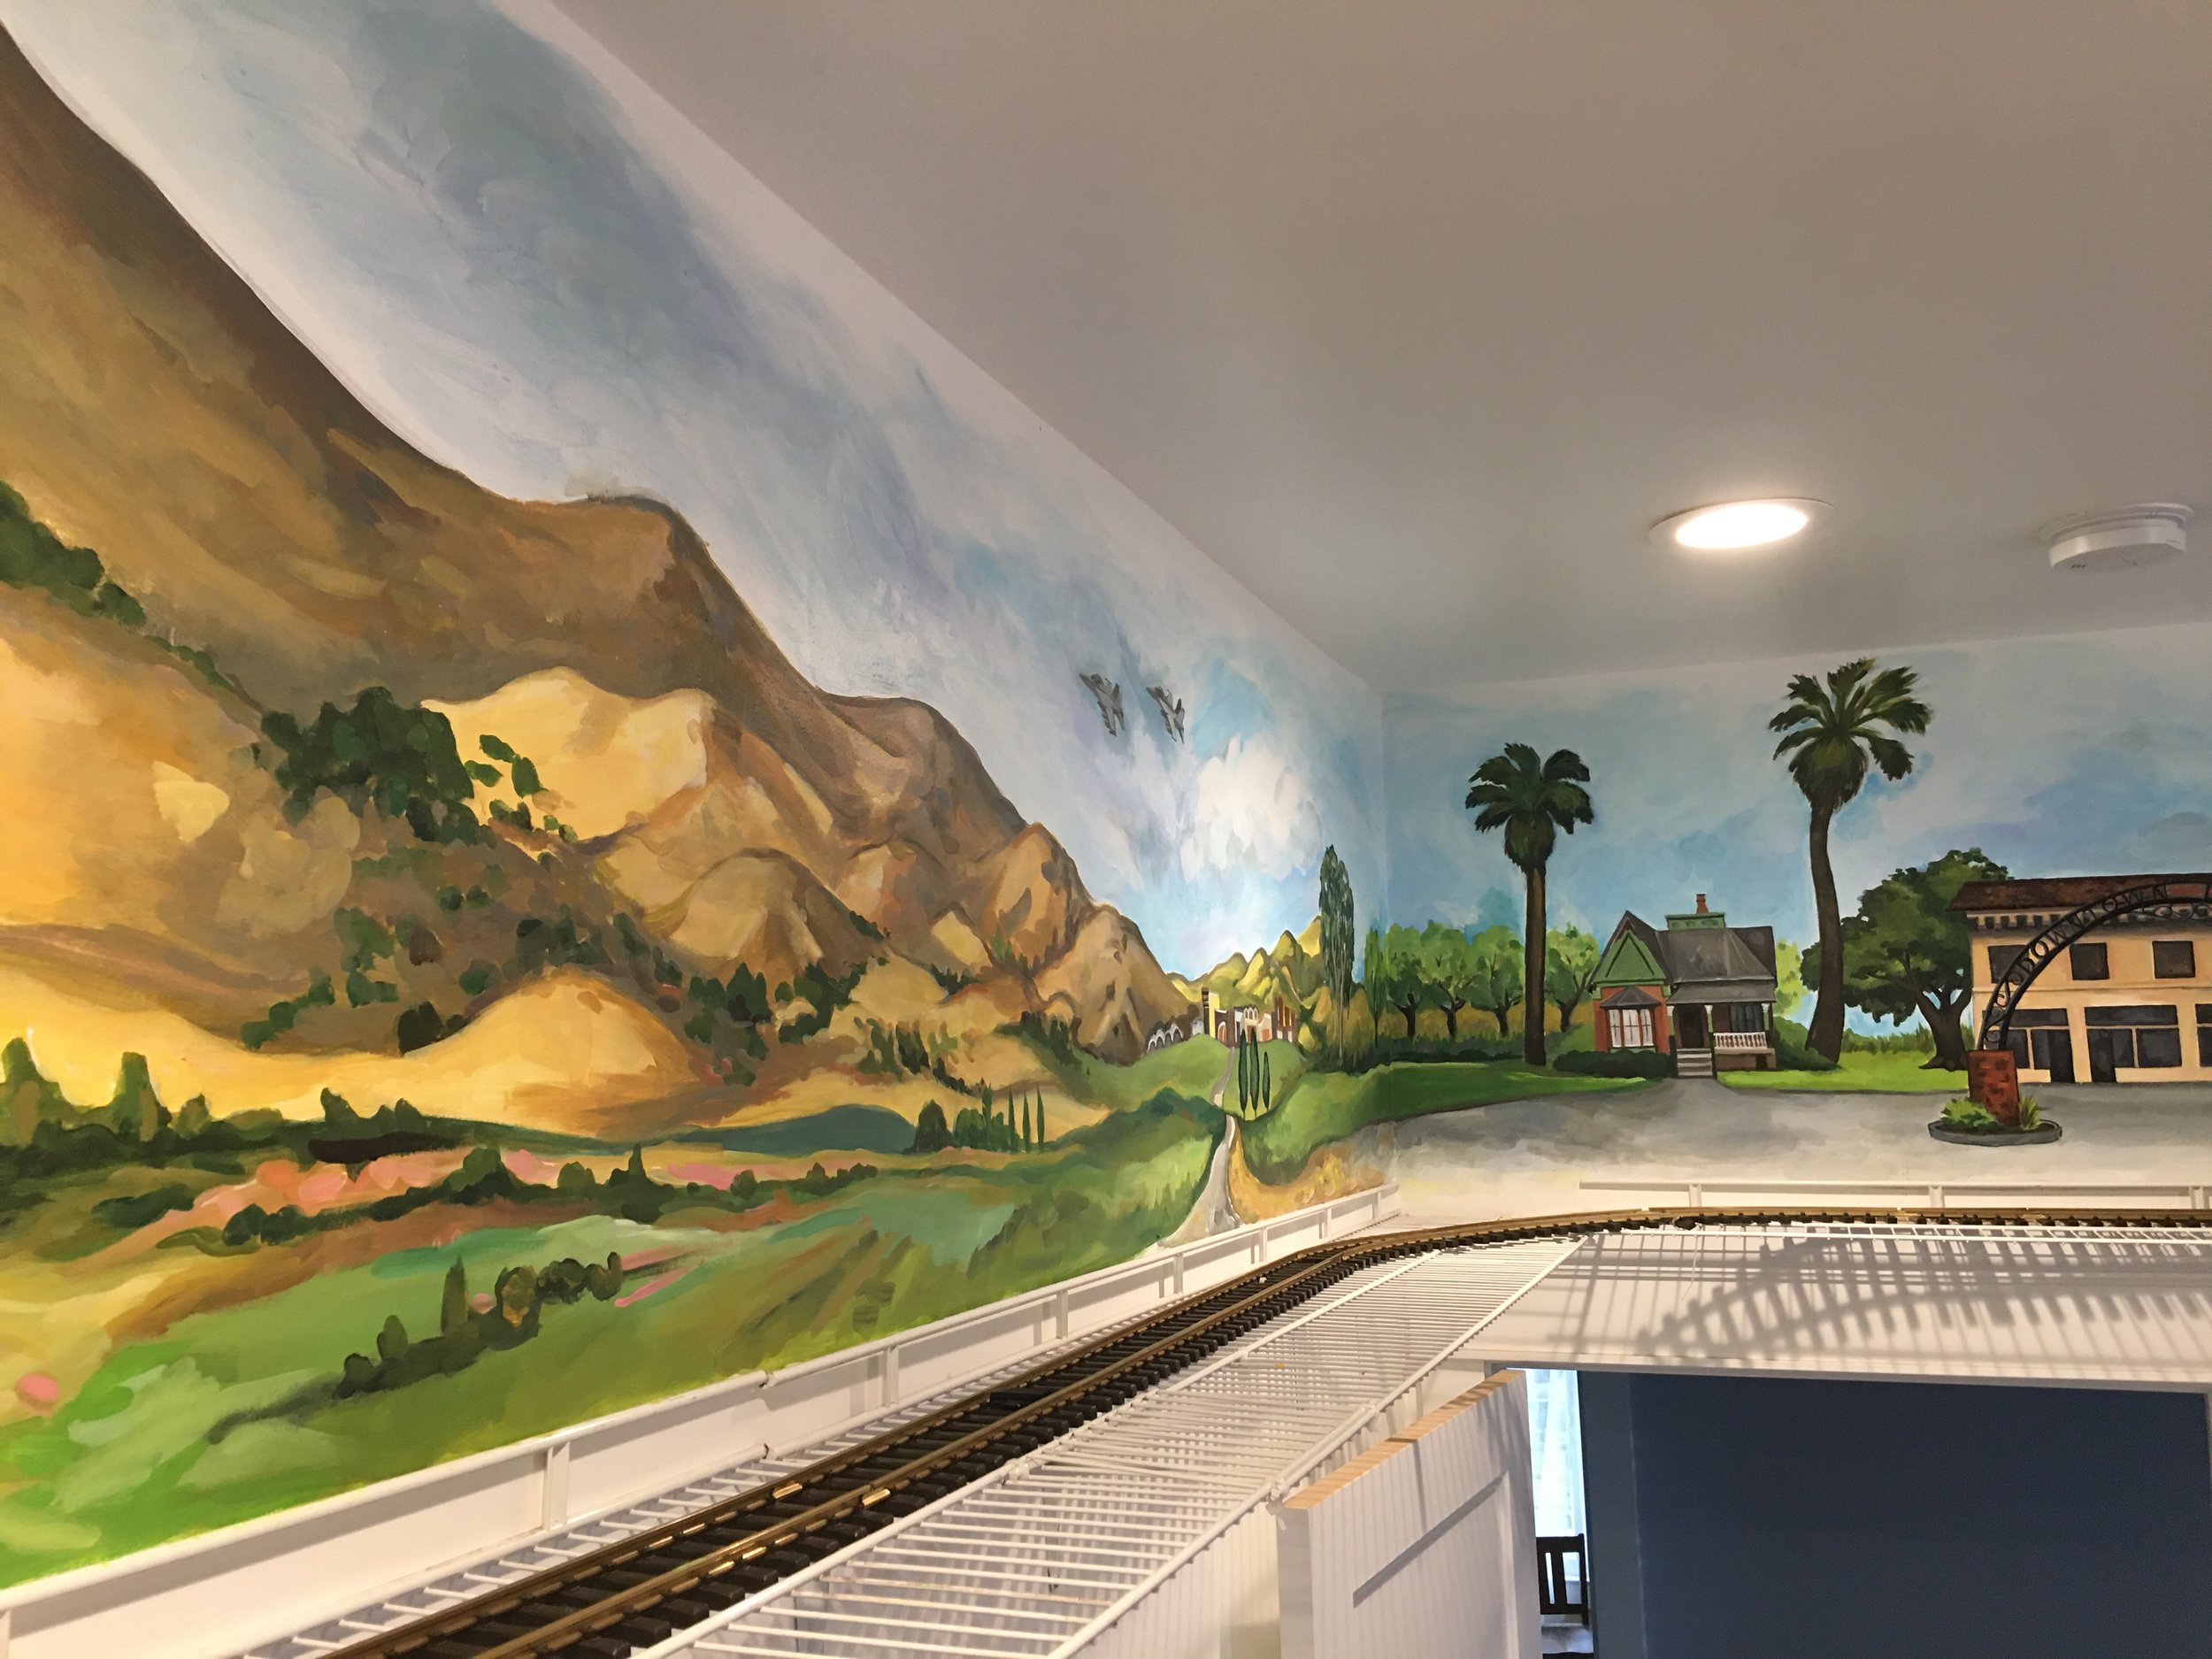 Hanford Scene Behind Electric Train Set, Children's Storybook Garden & Museum, Hanford, CA. 2021. 